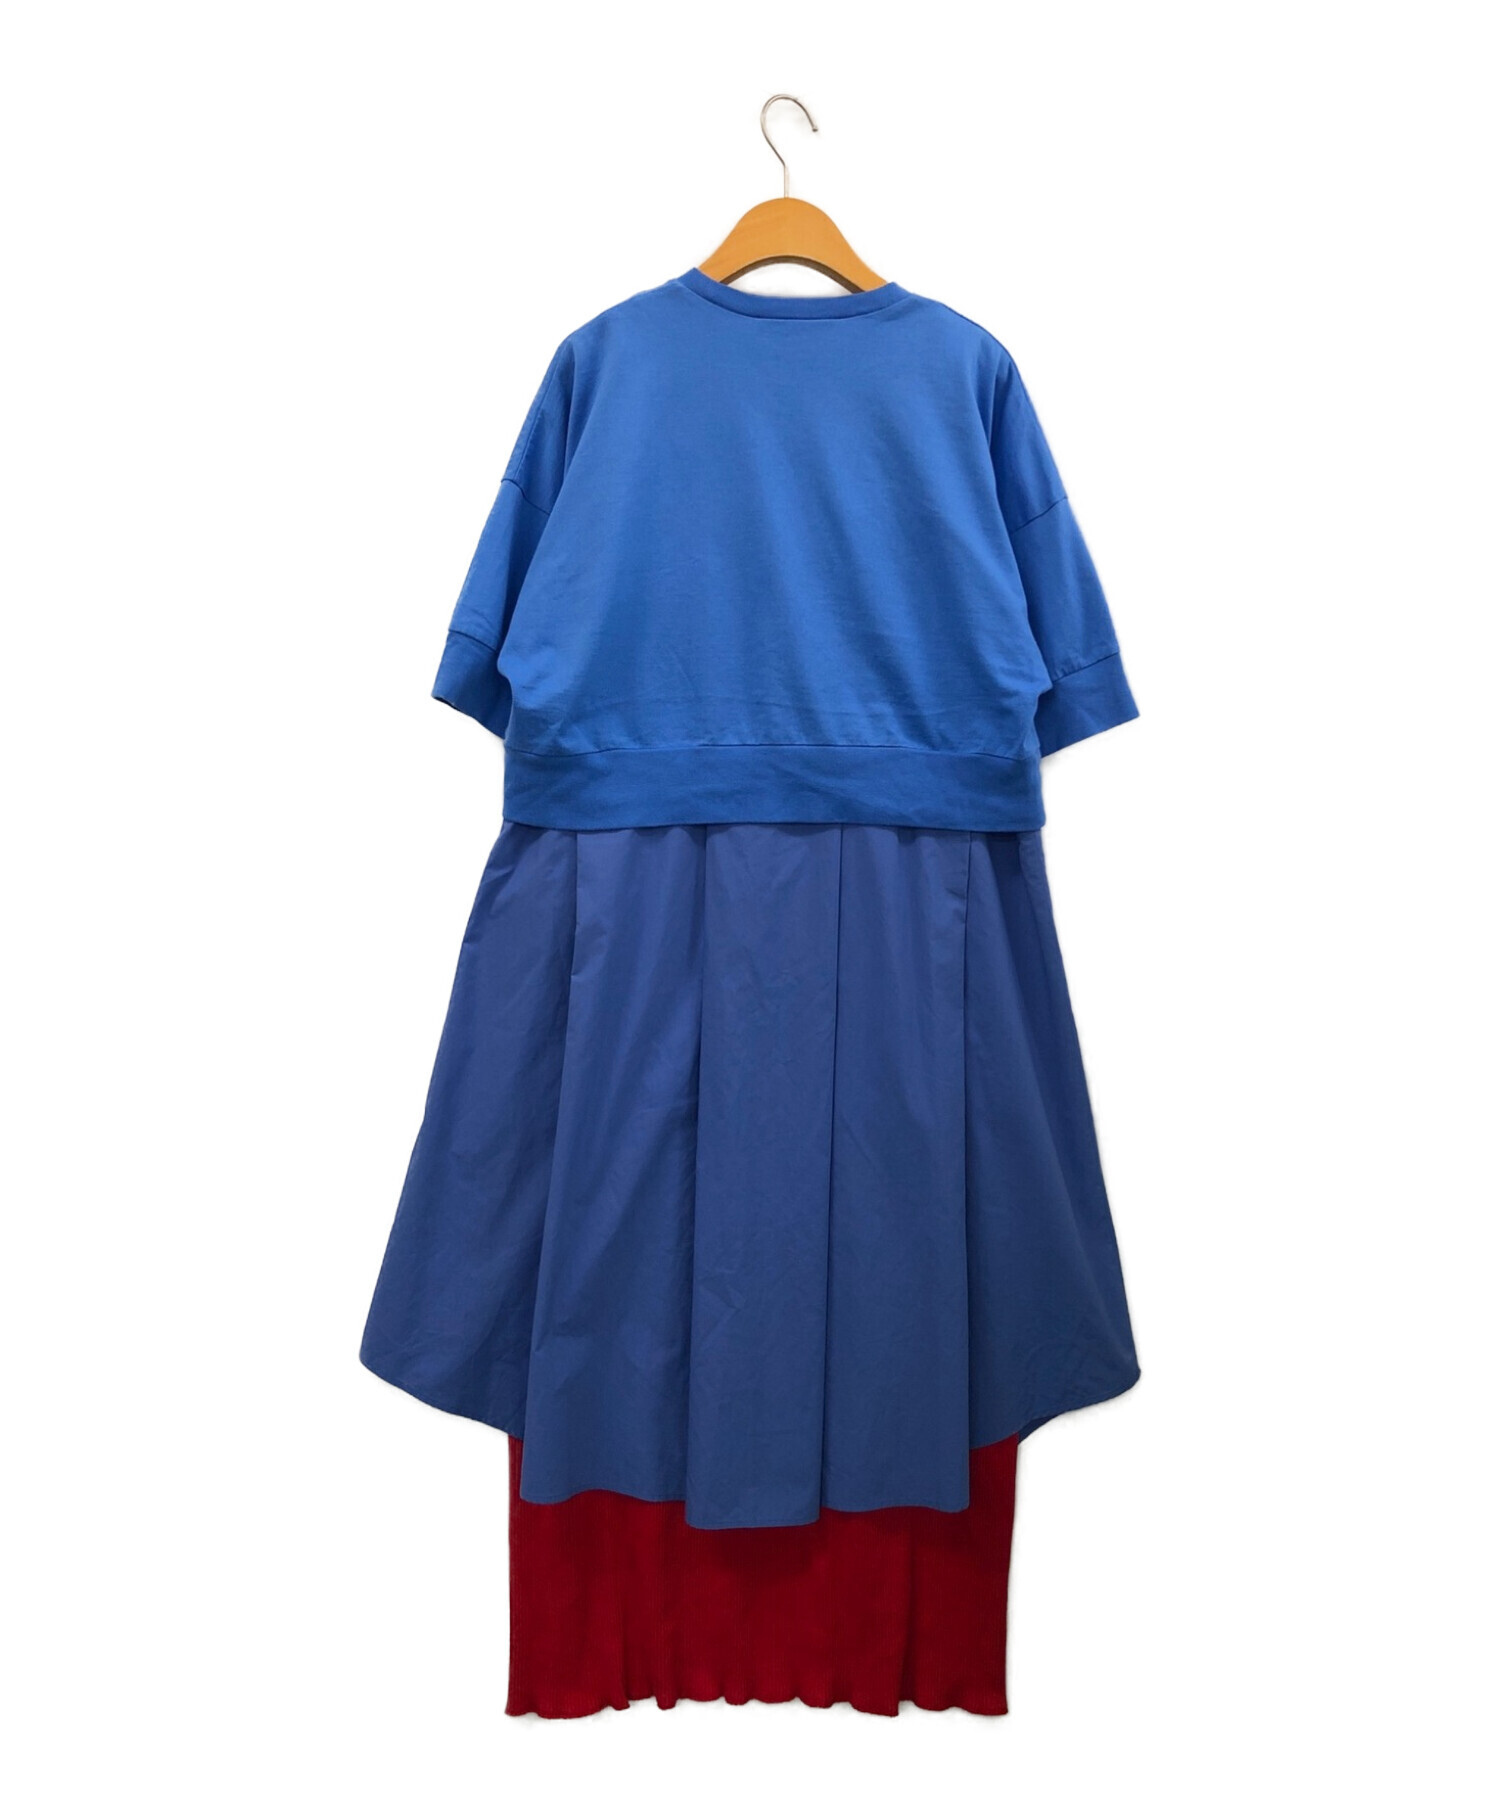 左わき腹部分薄い汚れインナーENFOLD クラシック天竺 スタイルデザイン ドレス